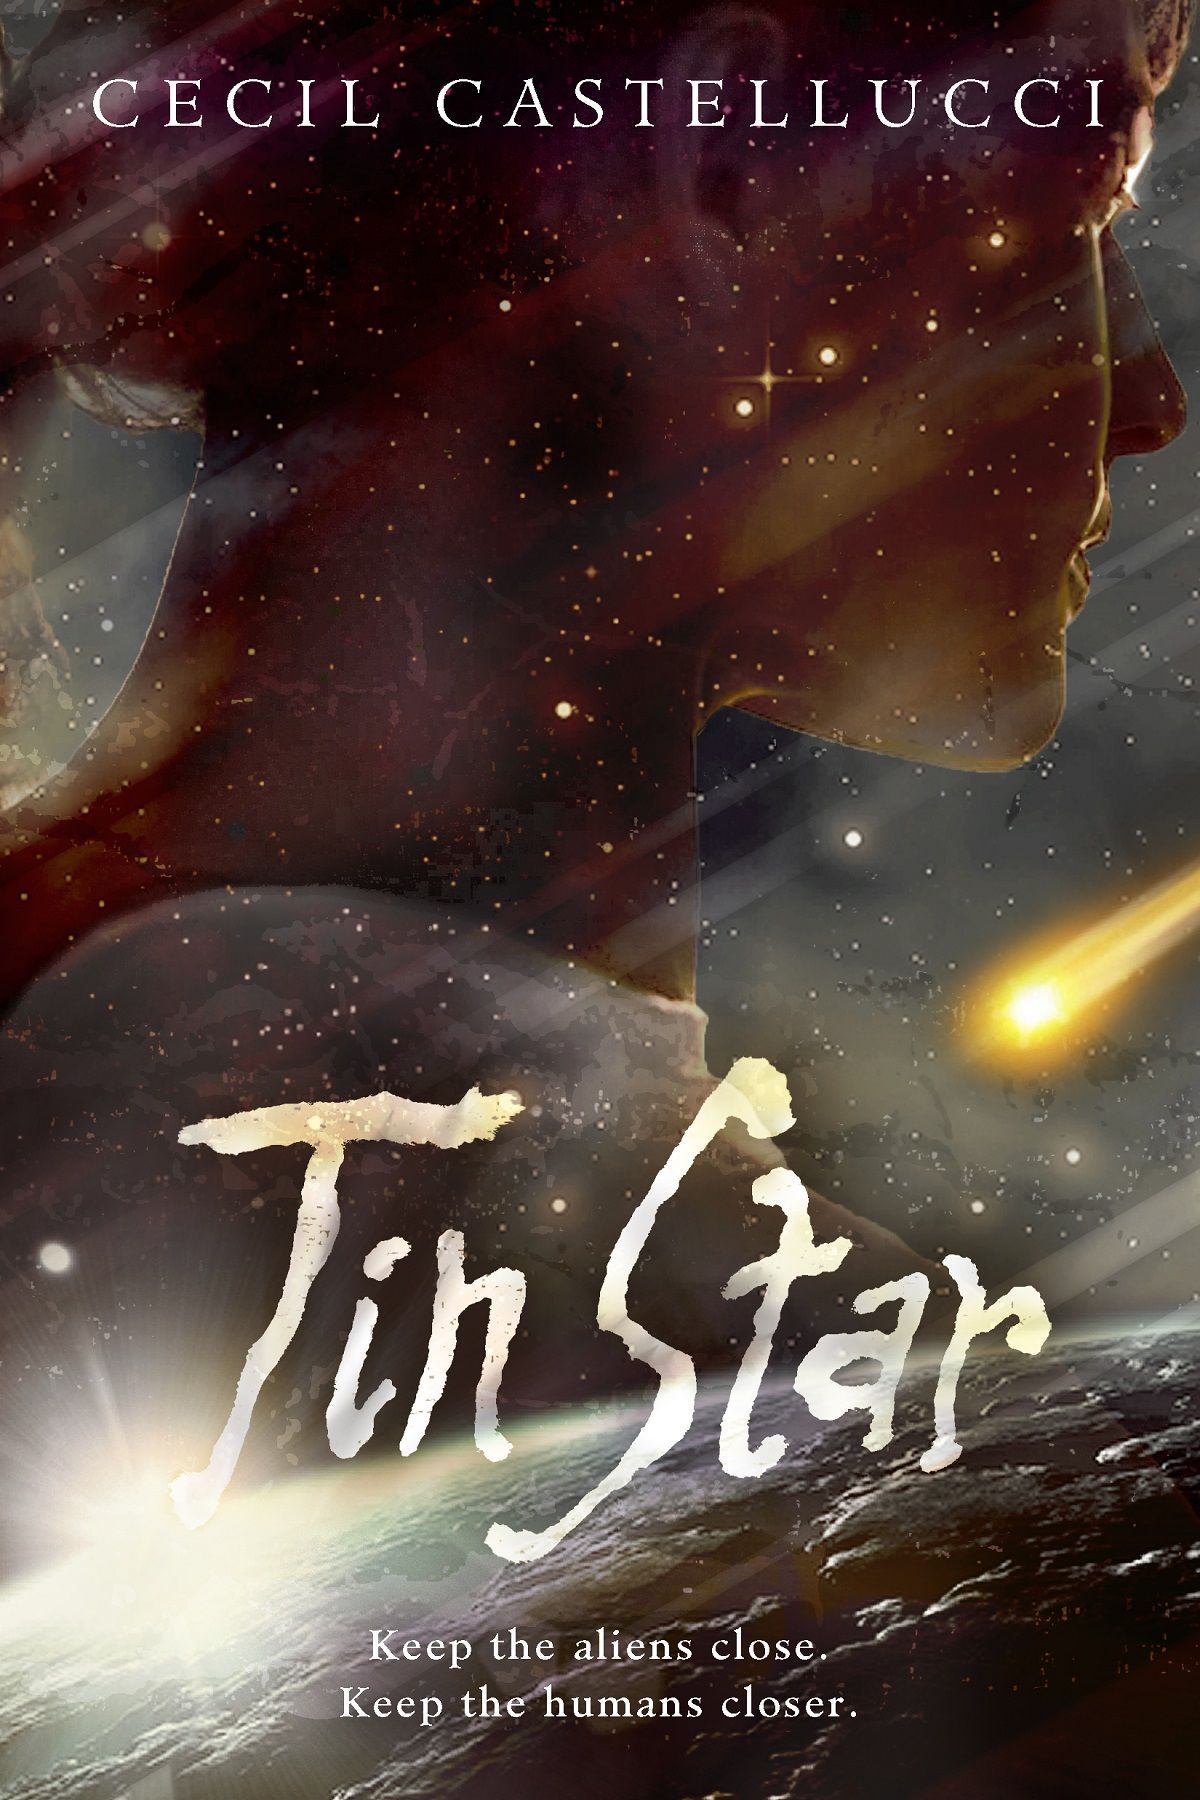 Interstellar Troublemaking: Cecil Castellucci's "Tin Star"